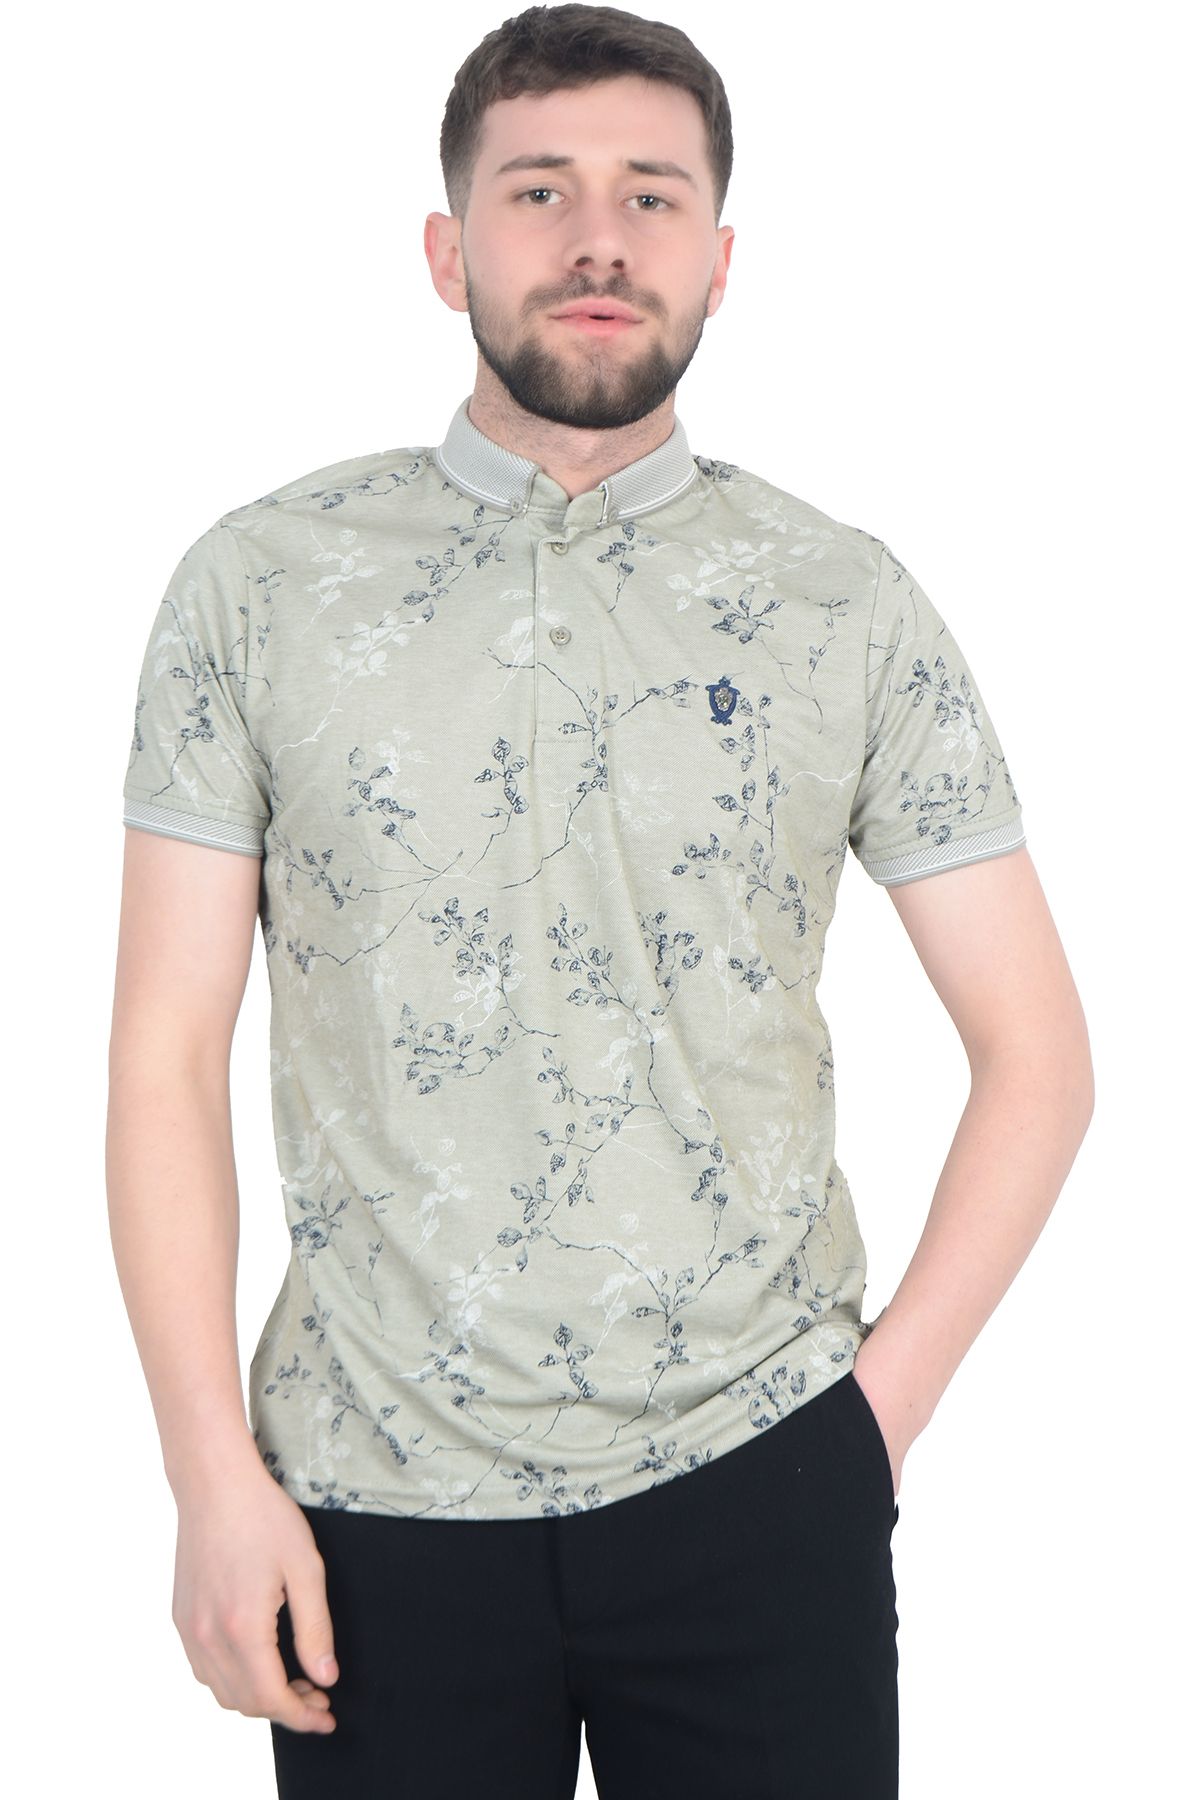 Cengiz İnler Sarmaşık Desenli Erkek Polo Yaka T-shirt